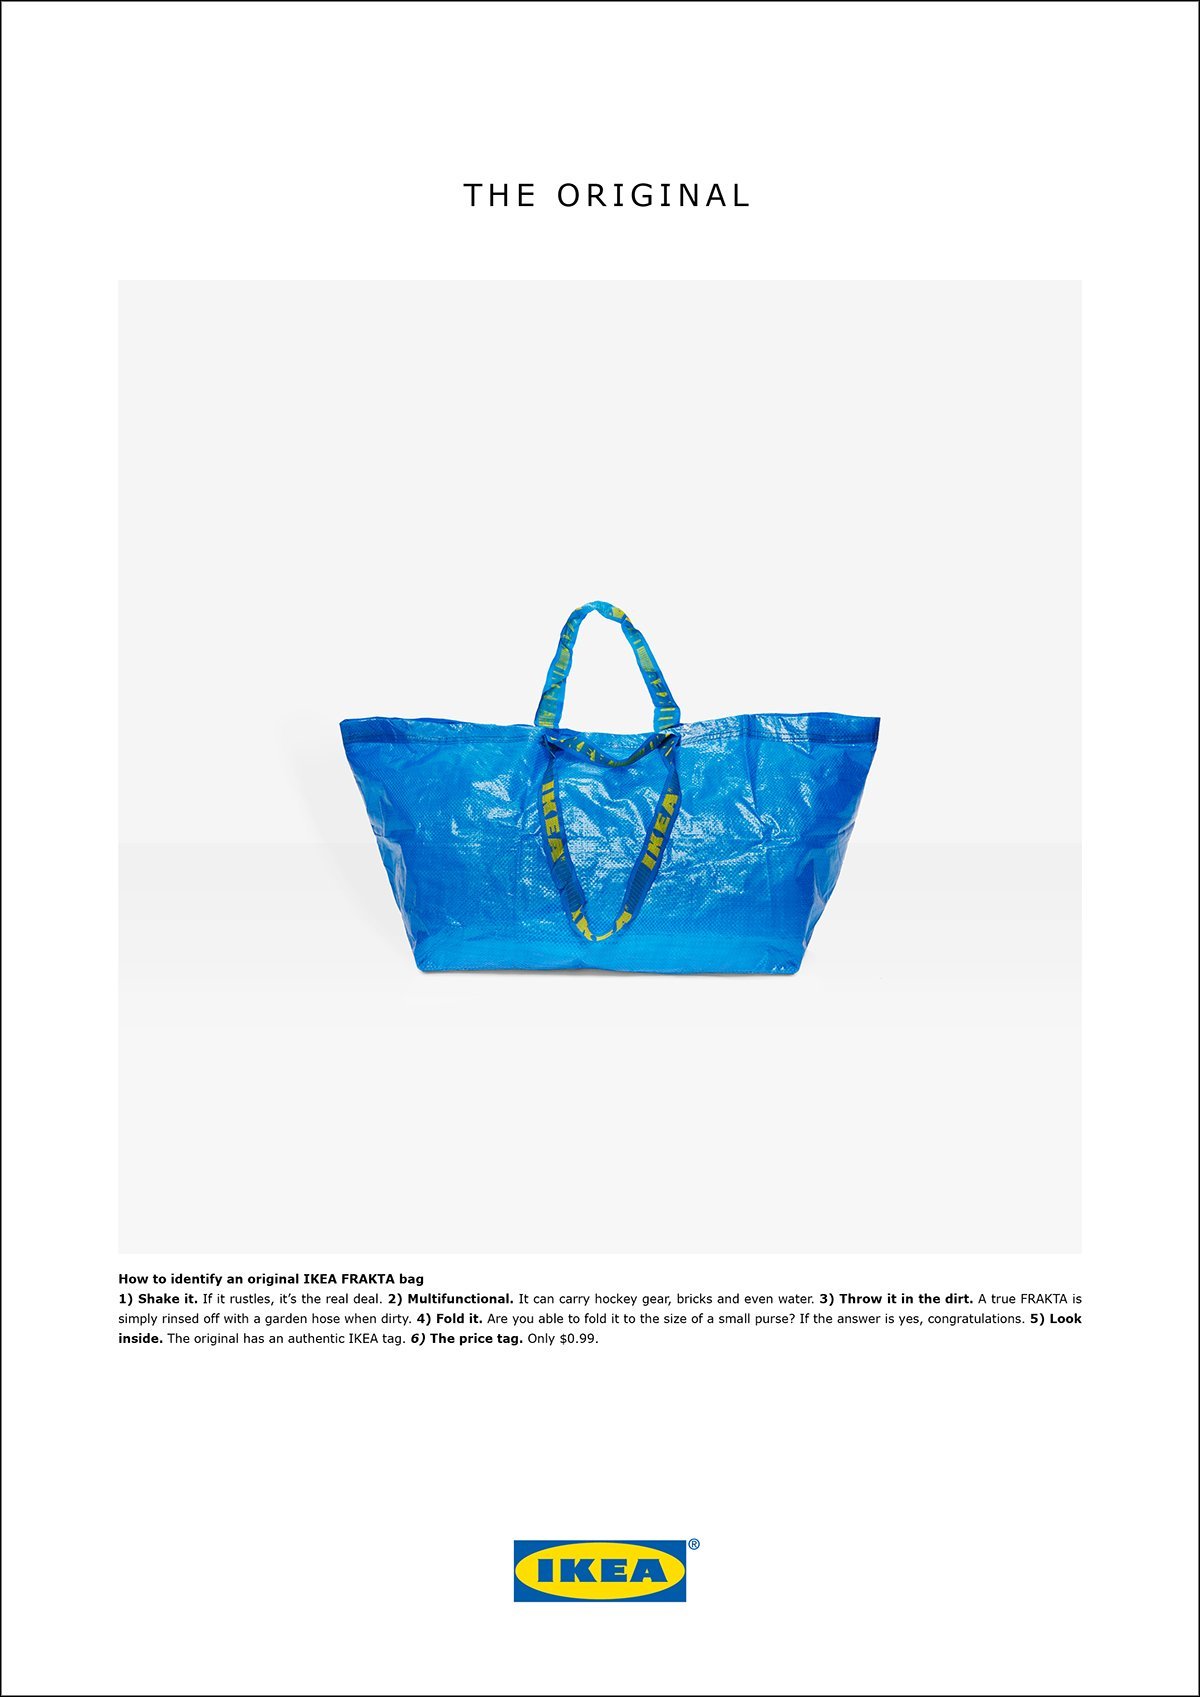 Anúncio da Ikea: piada com a bolsa da grife Balenciaga